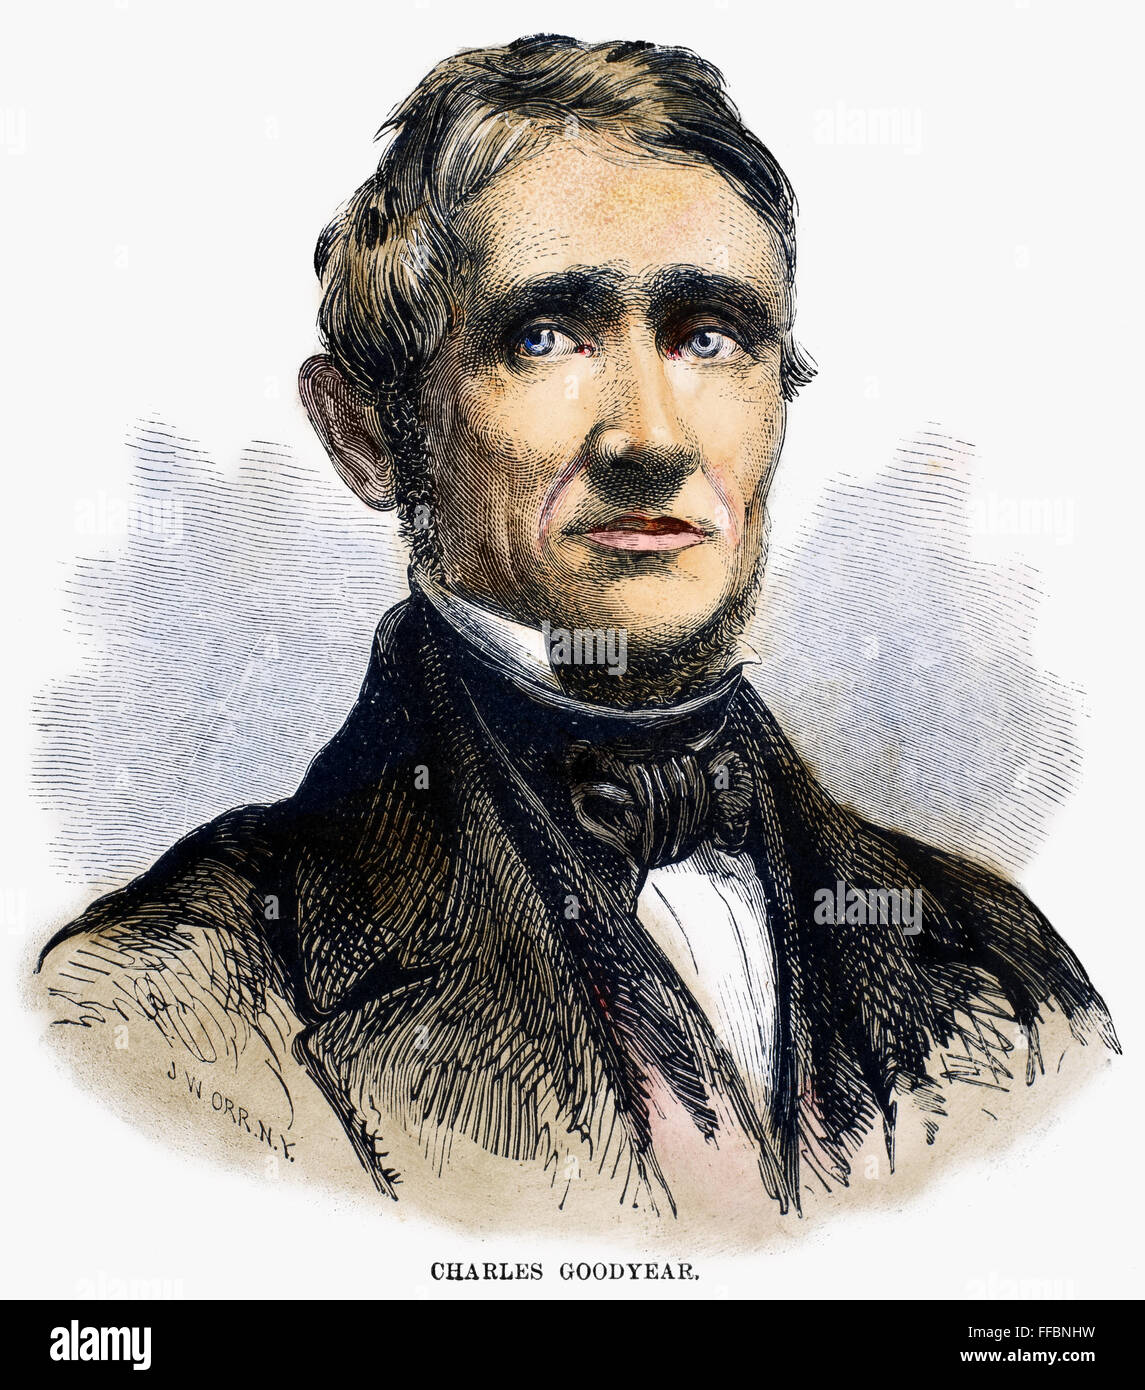 CHARLES GOODYEAR /n(1800-1860). L'inventeur américain. La gravure de ligne, 19e siècle. Banque D'Images